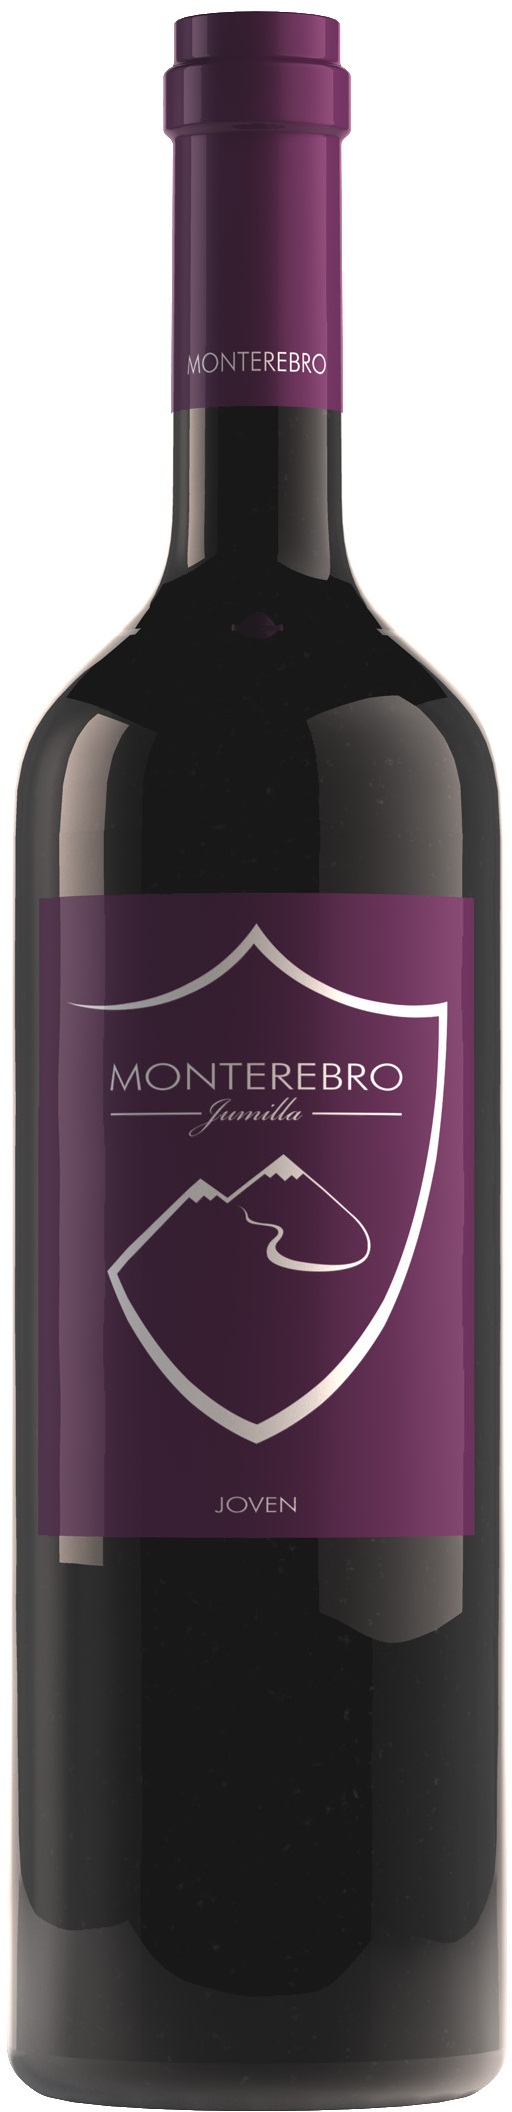 Logo del vino Monterebro Joven